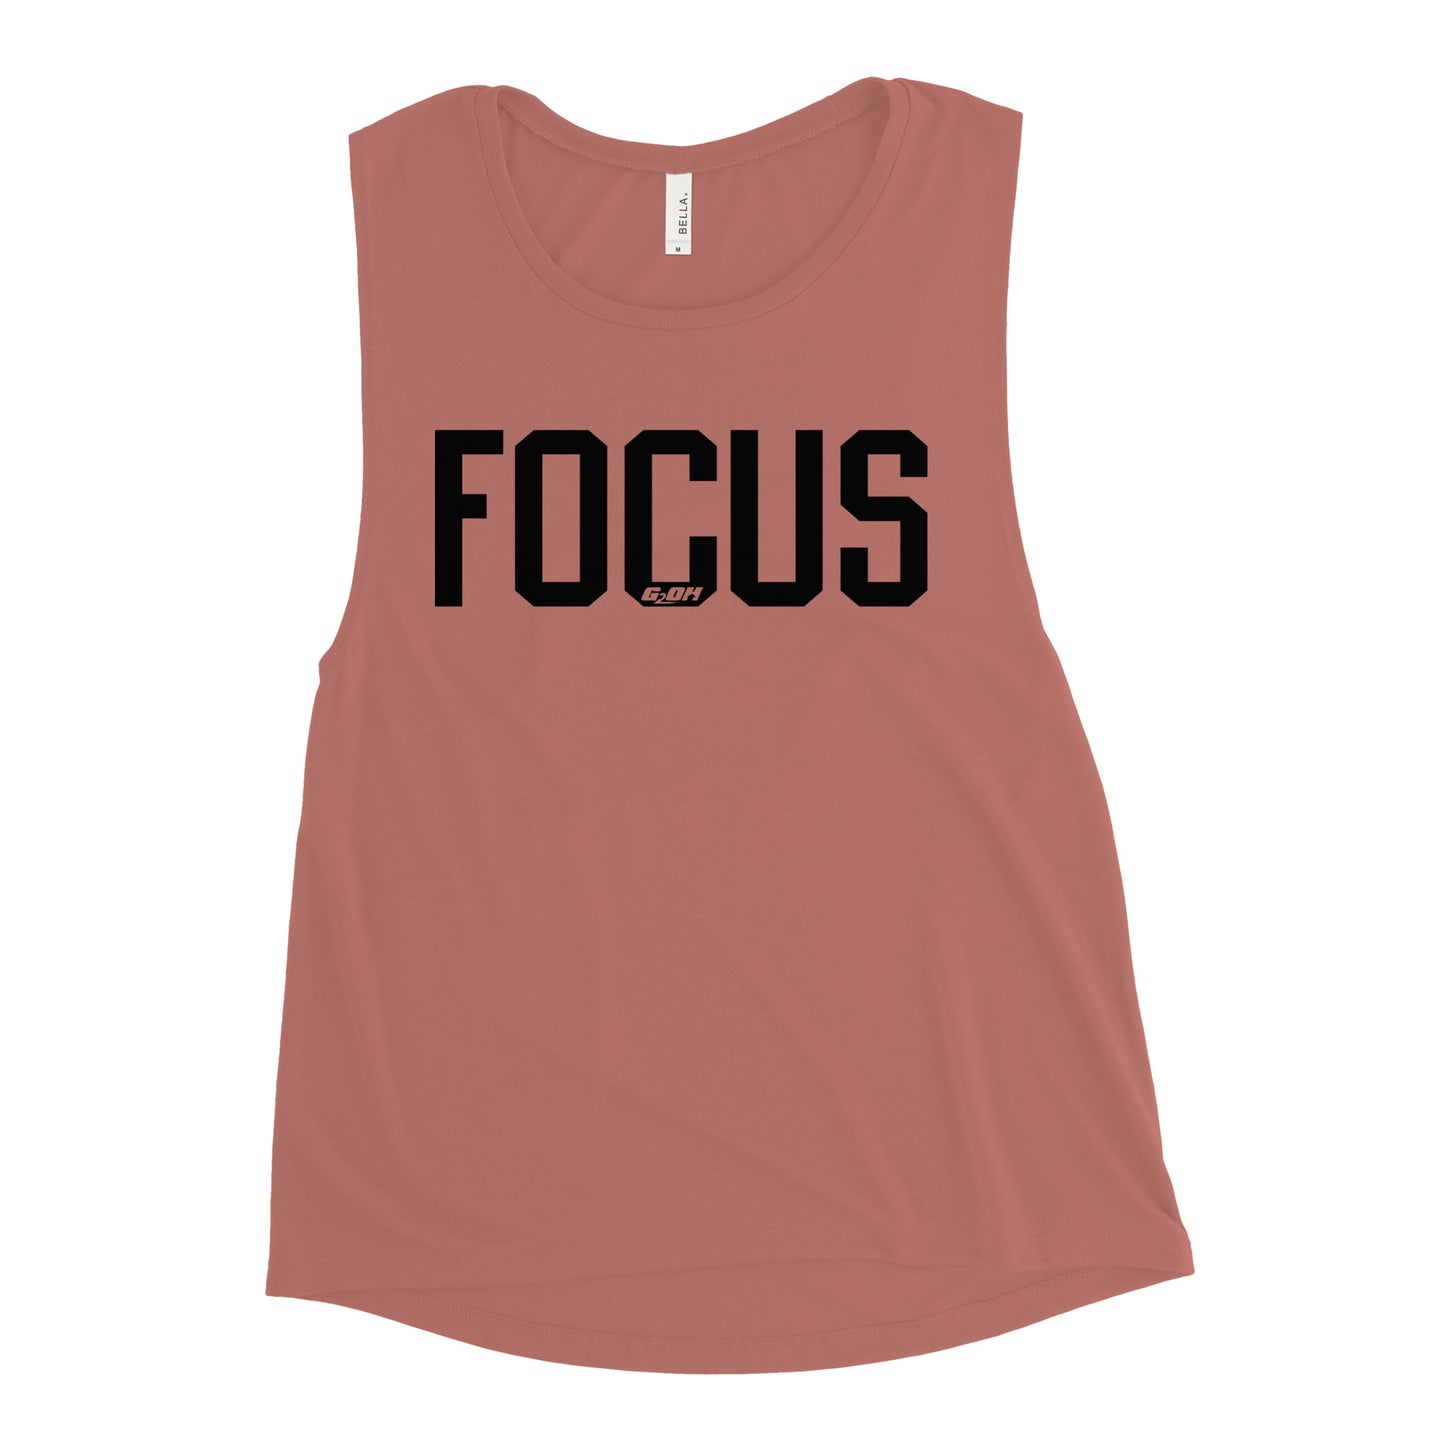 Focus Women's Muscle Tank